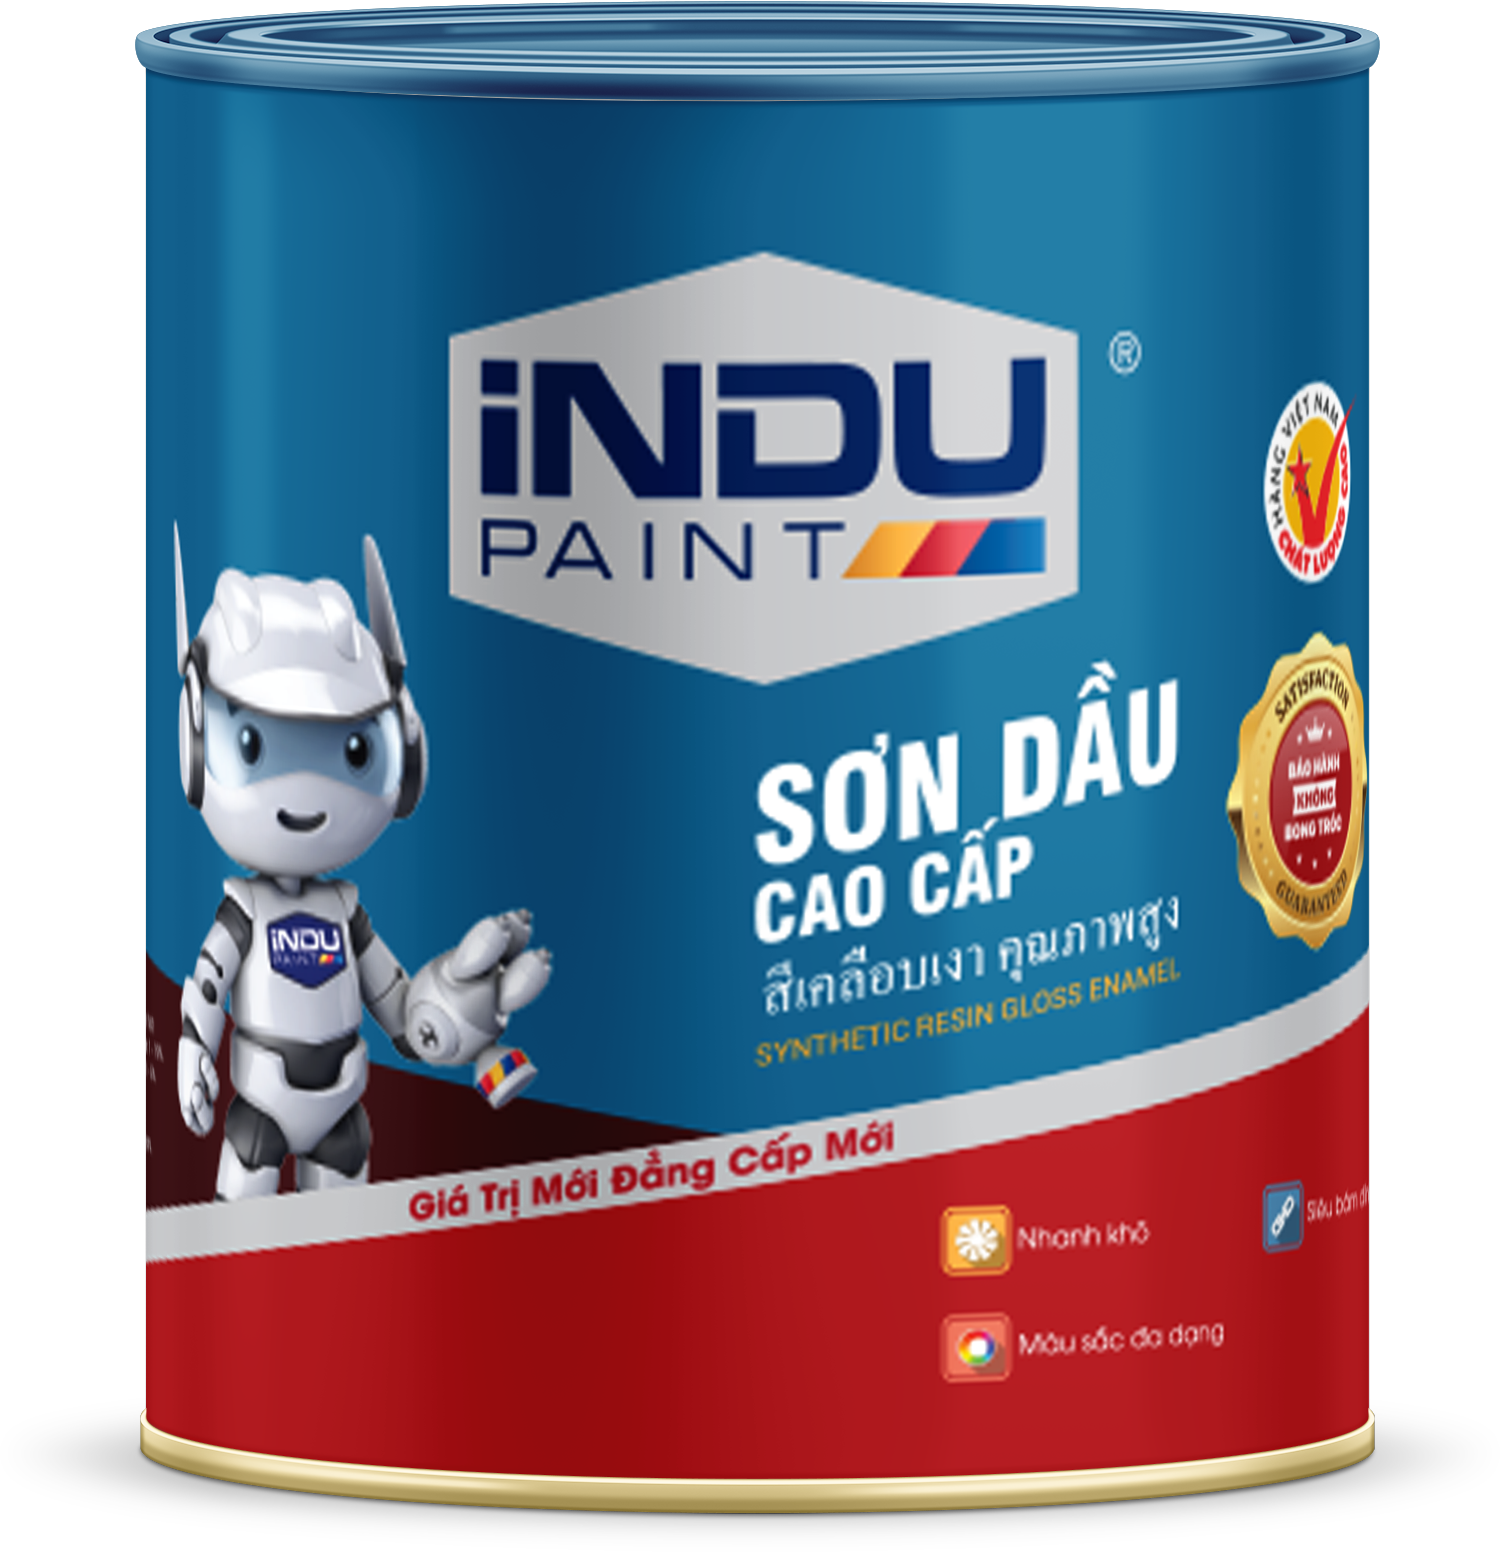 Tìm hiểu sơn dầu cao cấp iNDU Robot chất lượng